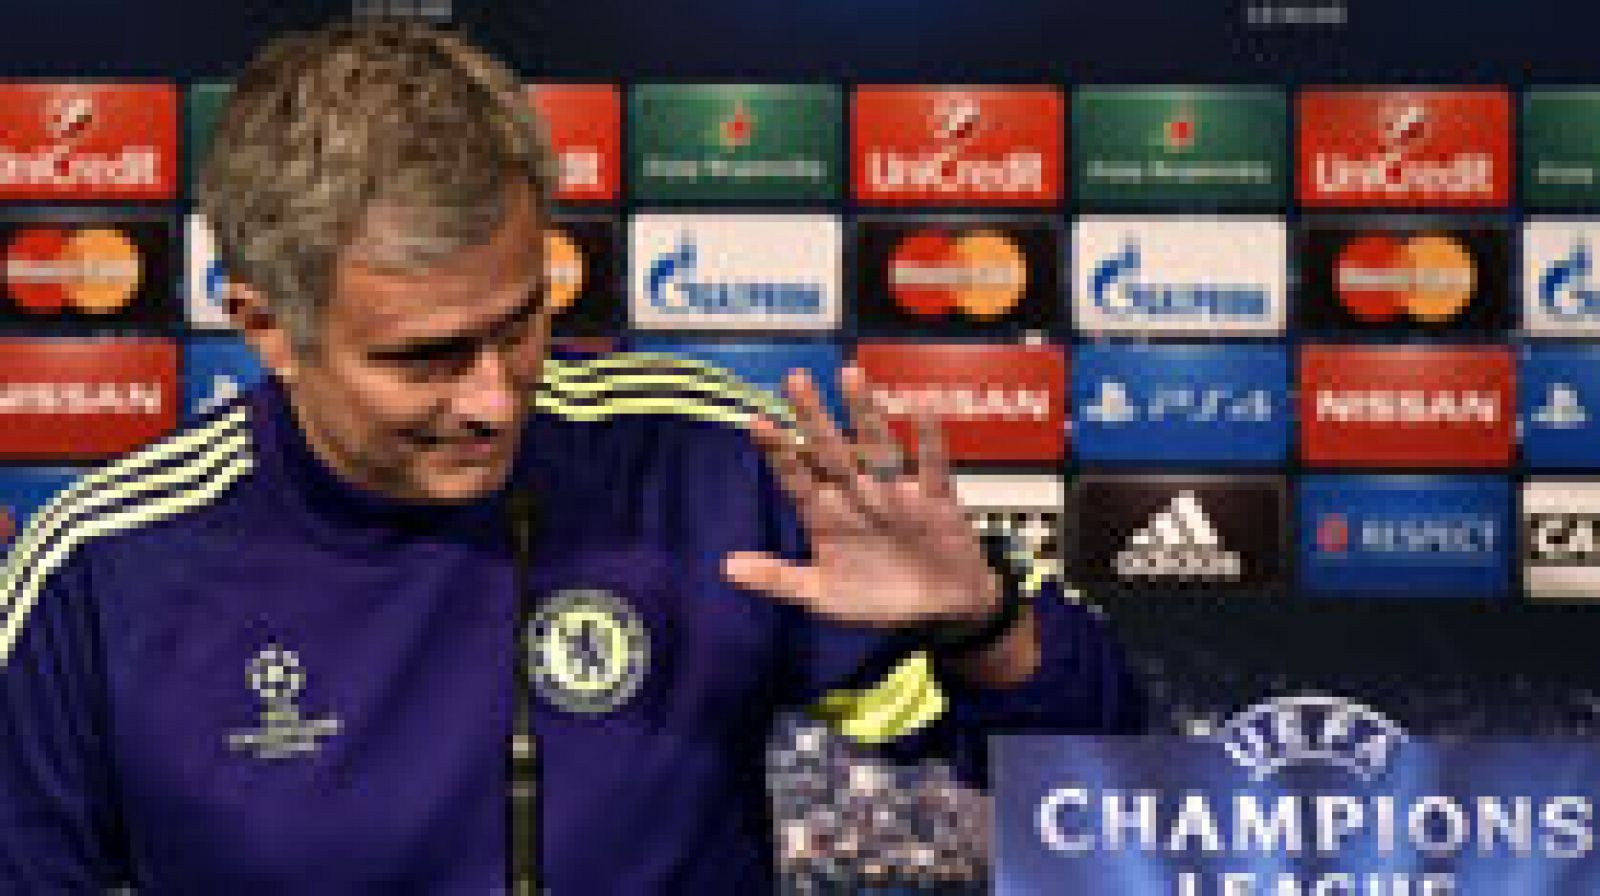 El entrenador del Chelsea, José Mourinho, ha afirmado que no está de acuerdo en que el Real Madrid y el Bayern de Múnich sean los favoritos para ganar la Liga de Campeones, al tiempo que señaló que en esta competición suelen darse muchas sorpresas.